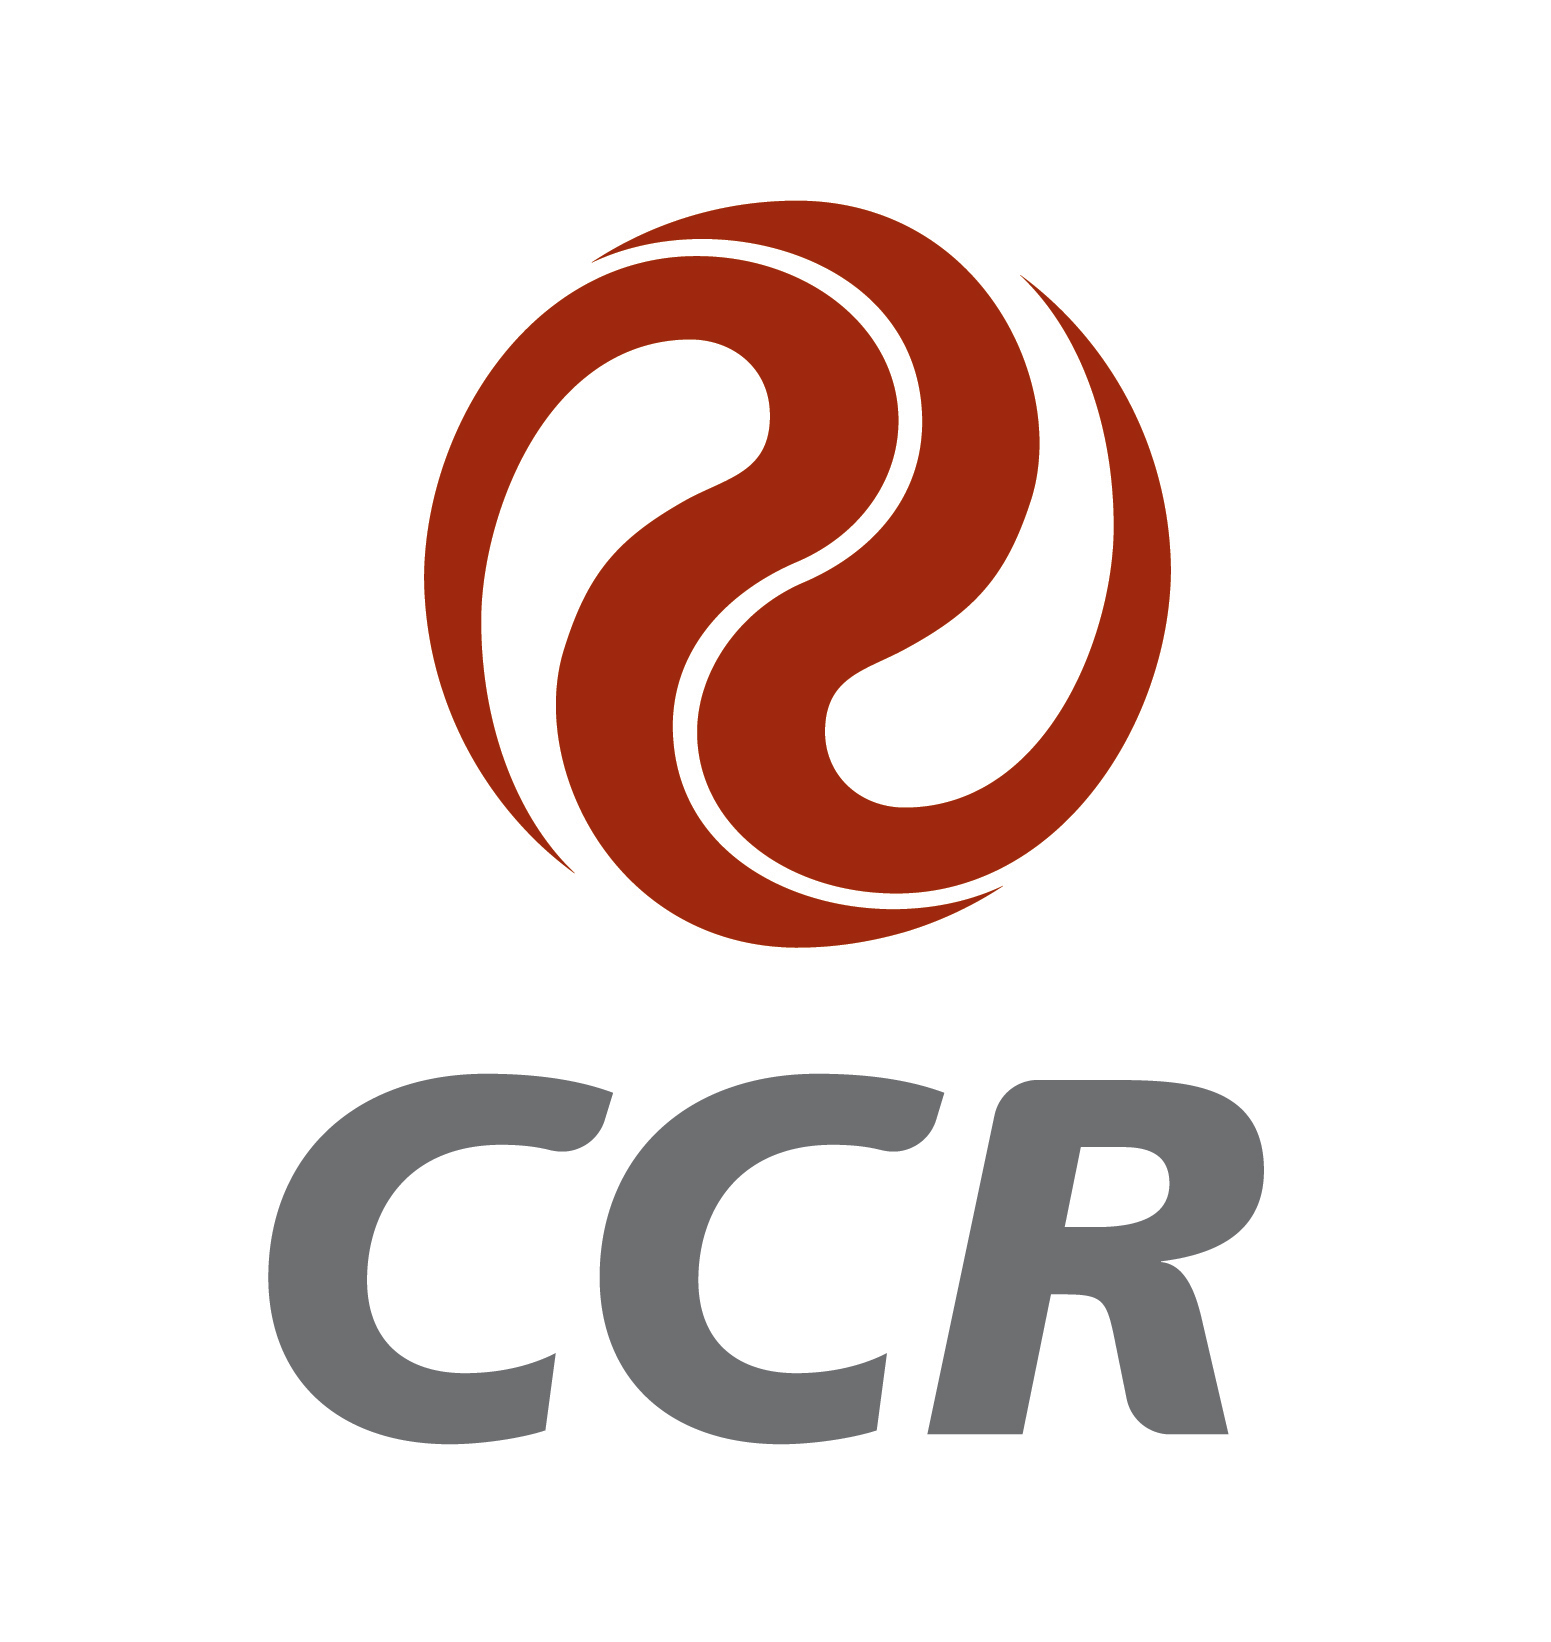 p>91 CCR (CCRO3) A CCR, uma das maiores empresas de concessão de rodovias do mundo, foi criada em 1998 e controla sete concessionárias de rodovias: CCR Ponte (RJ), CCR NovaDutra (SP- RJ), CCR